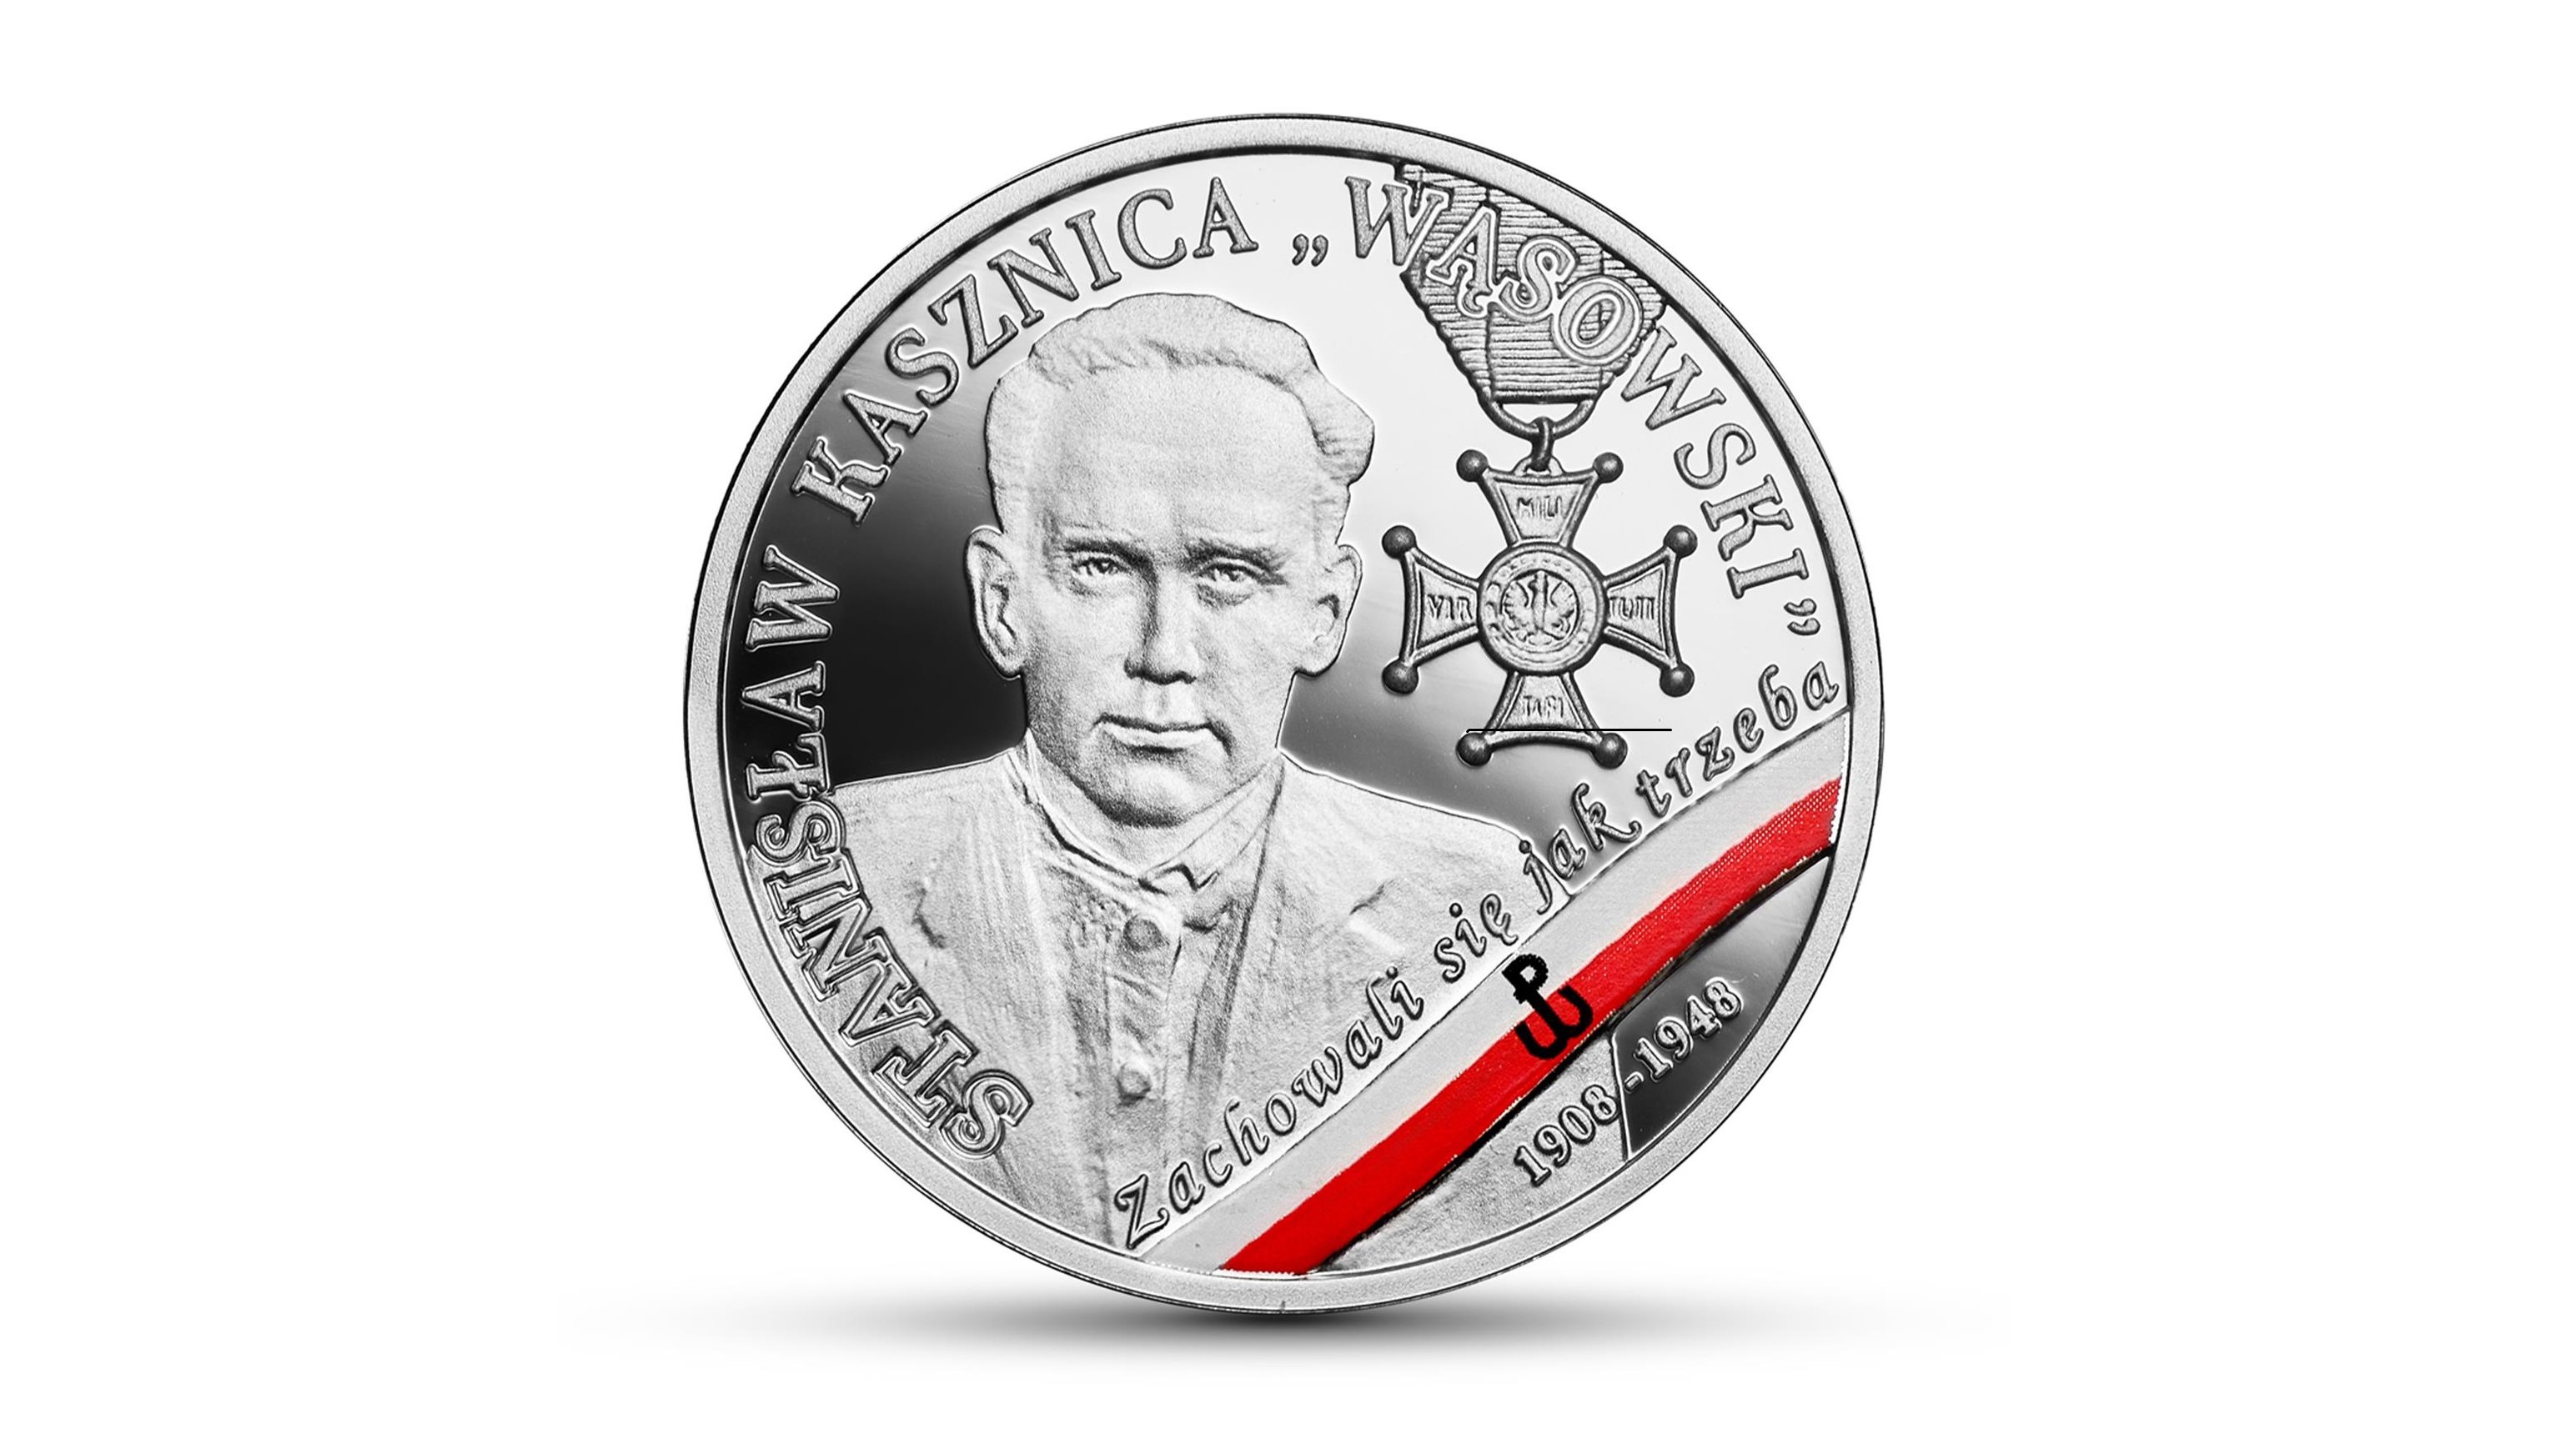 Stanisław Kasznica "Wąsowski" moneta nbp wyklęty - www.nbp.pl